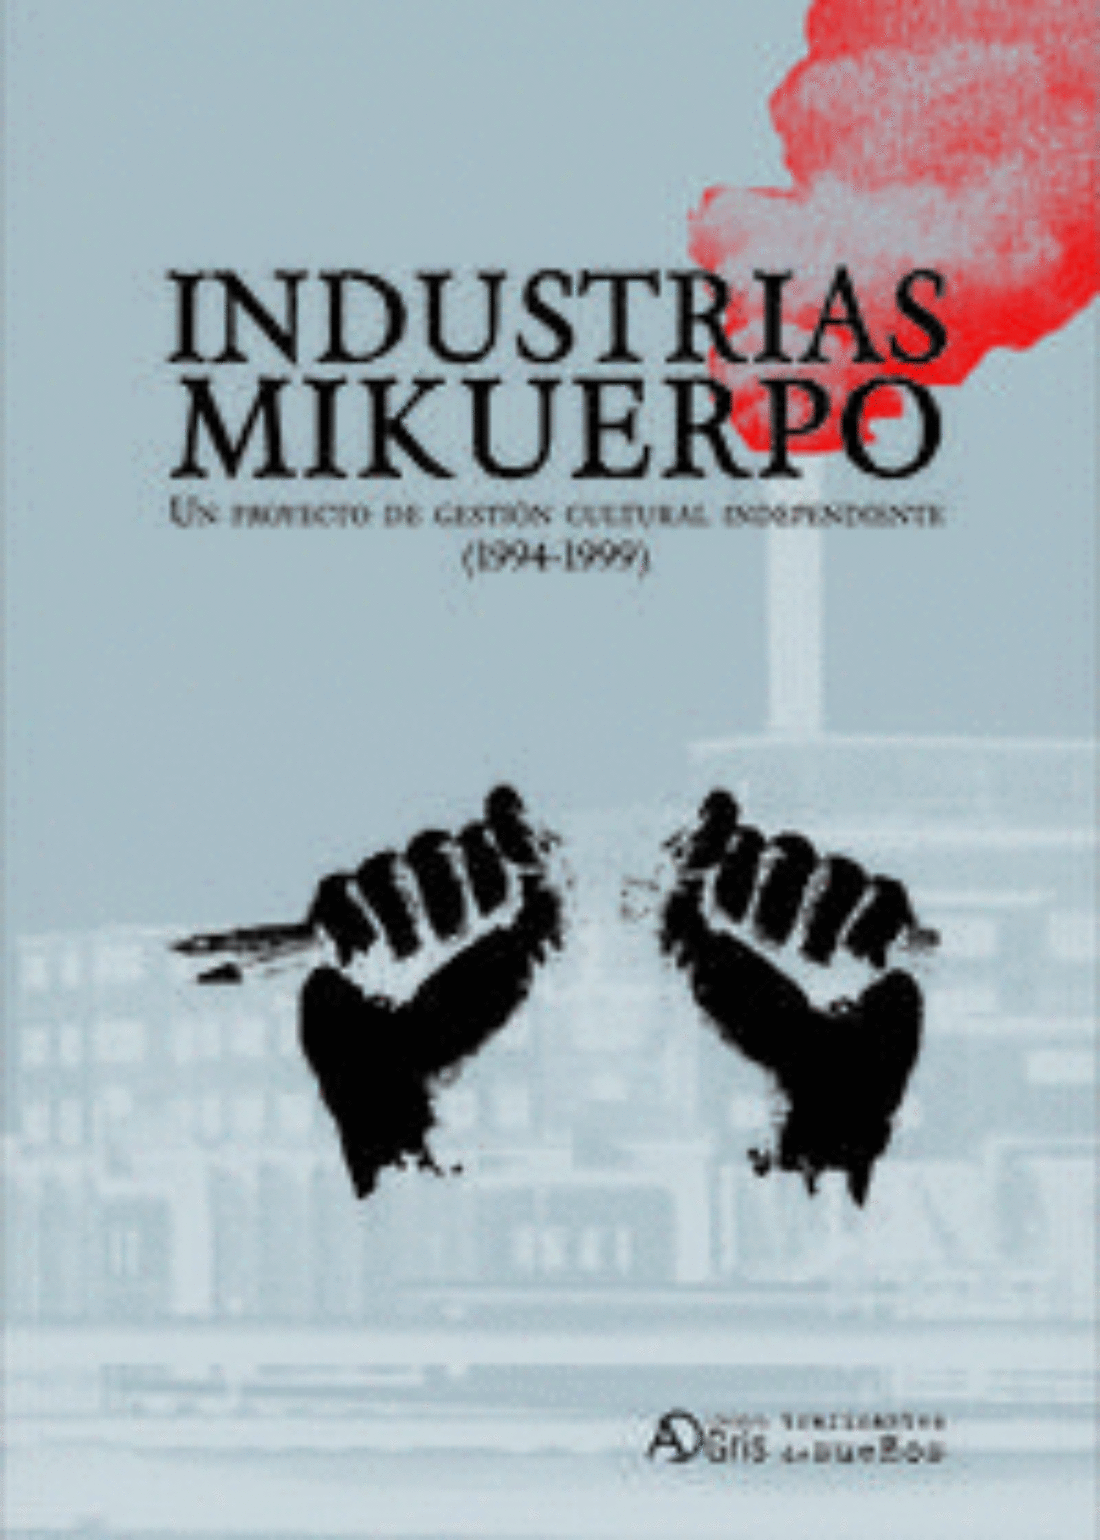 26 mayo, Madrid : presentación de «Industrias Mikuerpo»